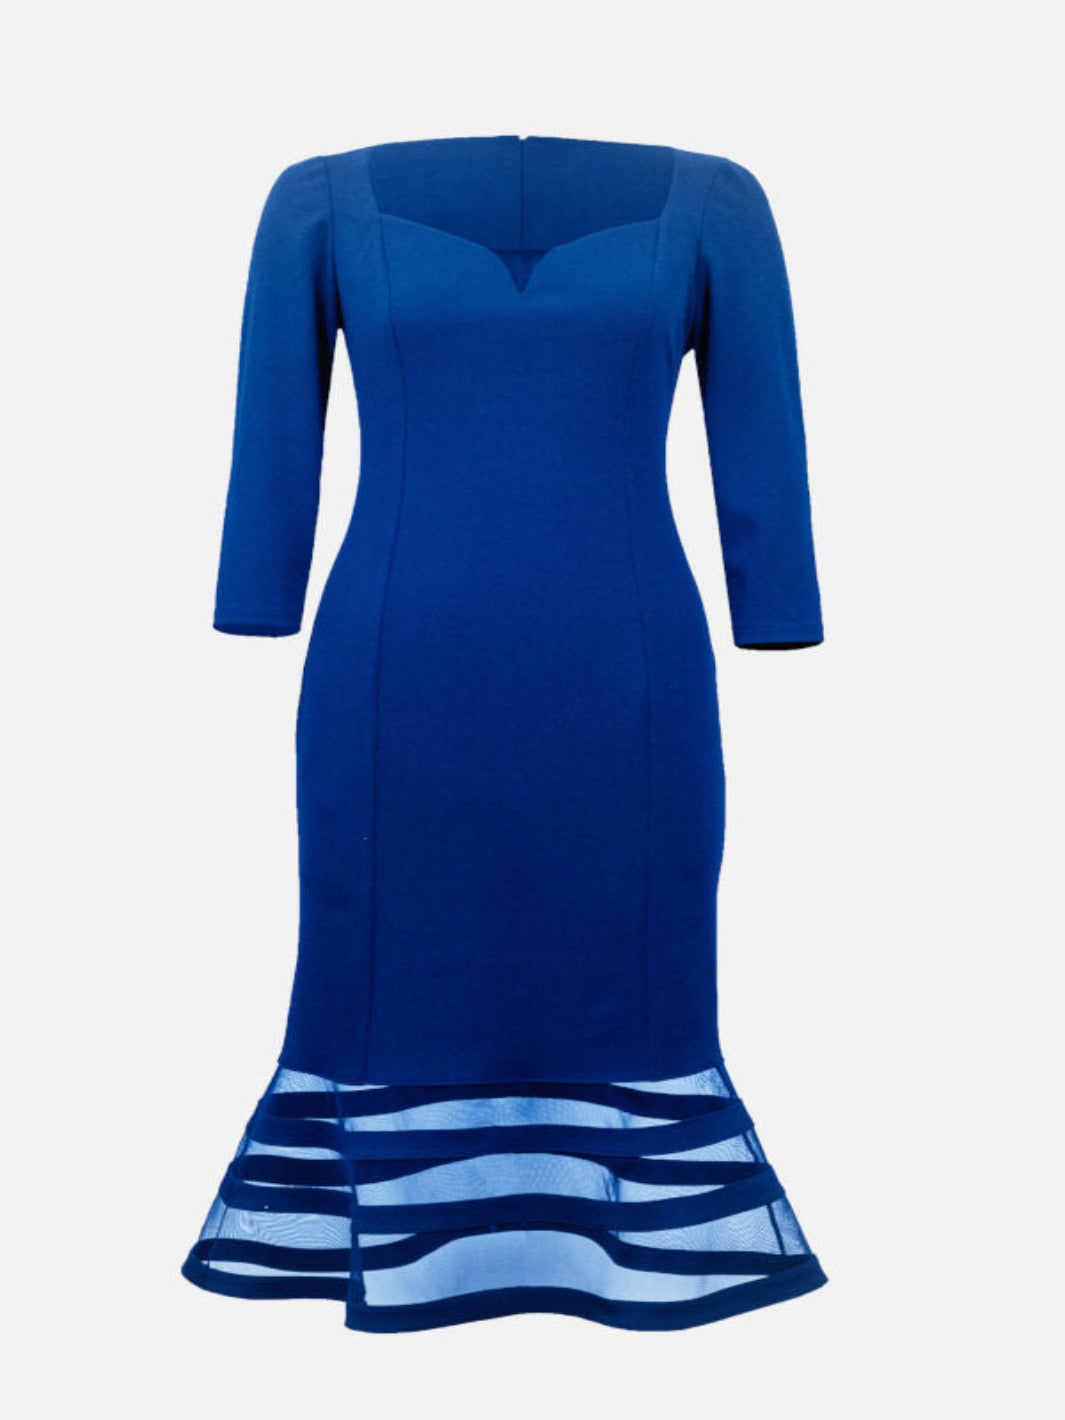 Joseph Ribkoff Sheer Panel Dress In Royal Blue 233706-Nicola Ross